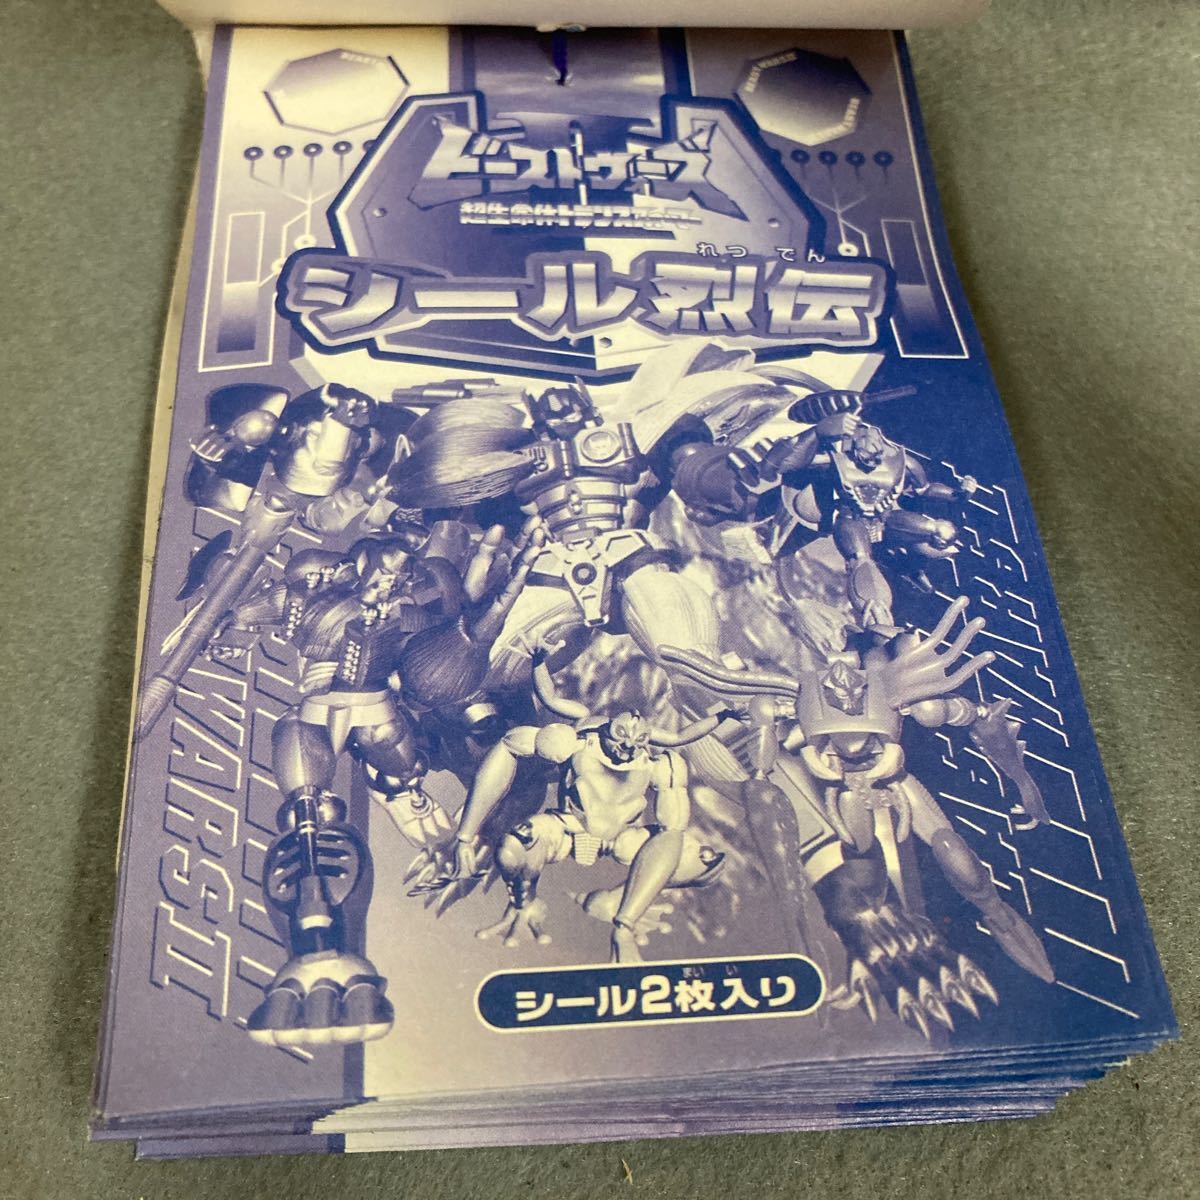  Beast Wars наклейка .. нераспечатанный 34 листов есть подлинная вещь Amada дагаси магазин малый наклейка 